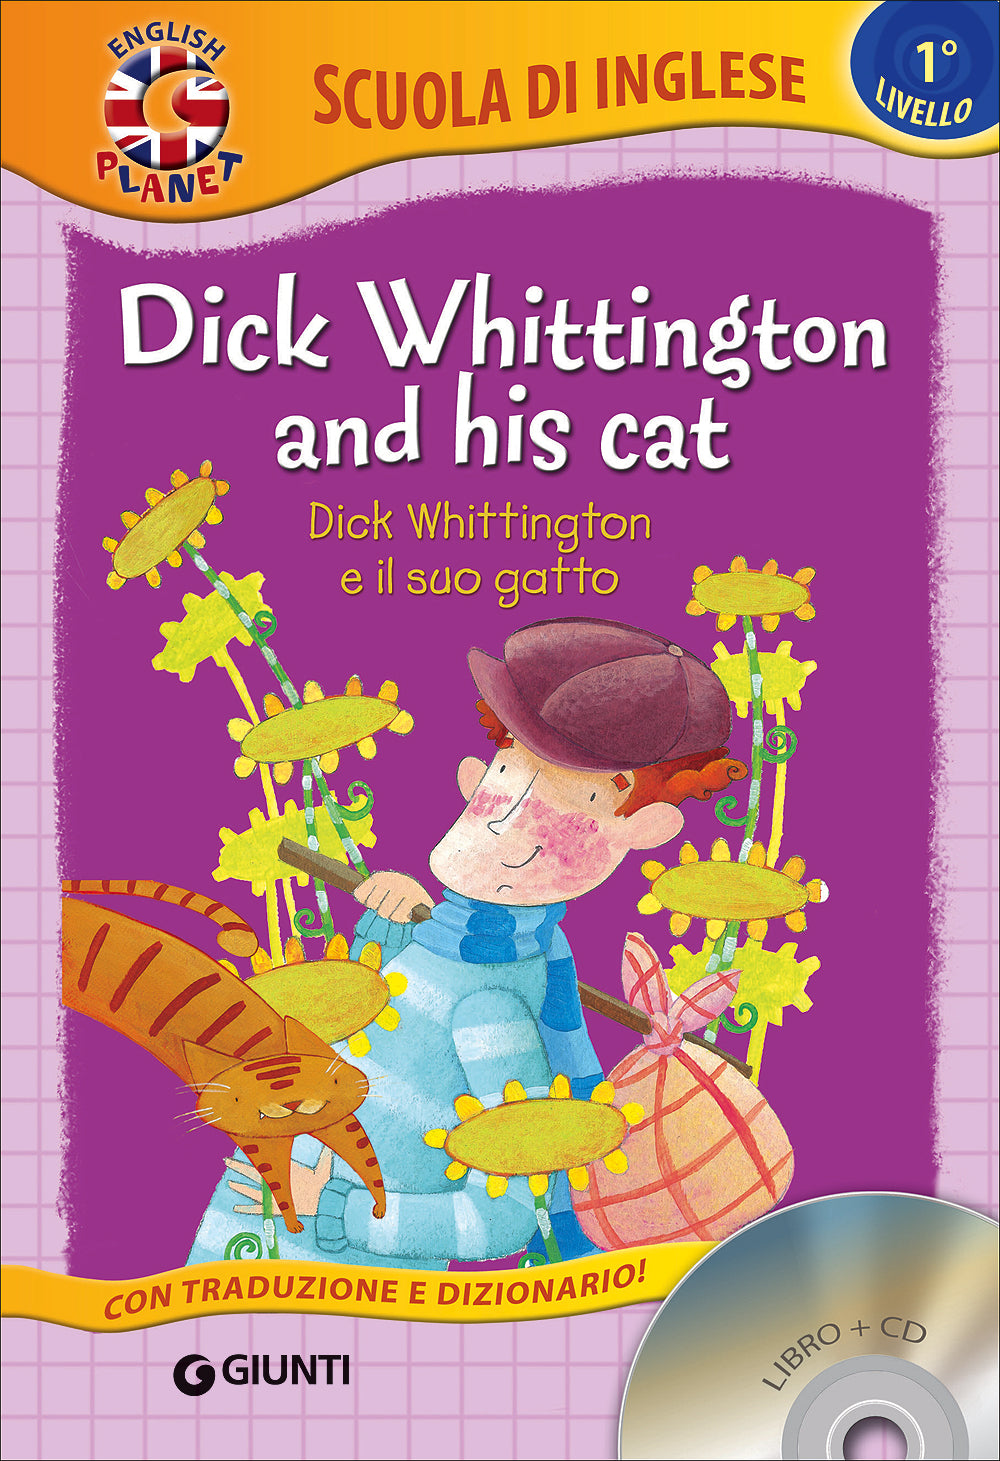 Dick Whittington and his cat + CD::Dick Whittington e il suo gatto - Con traduzione e dizionario!